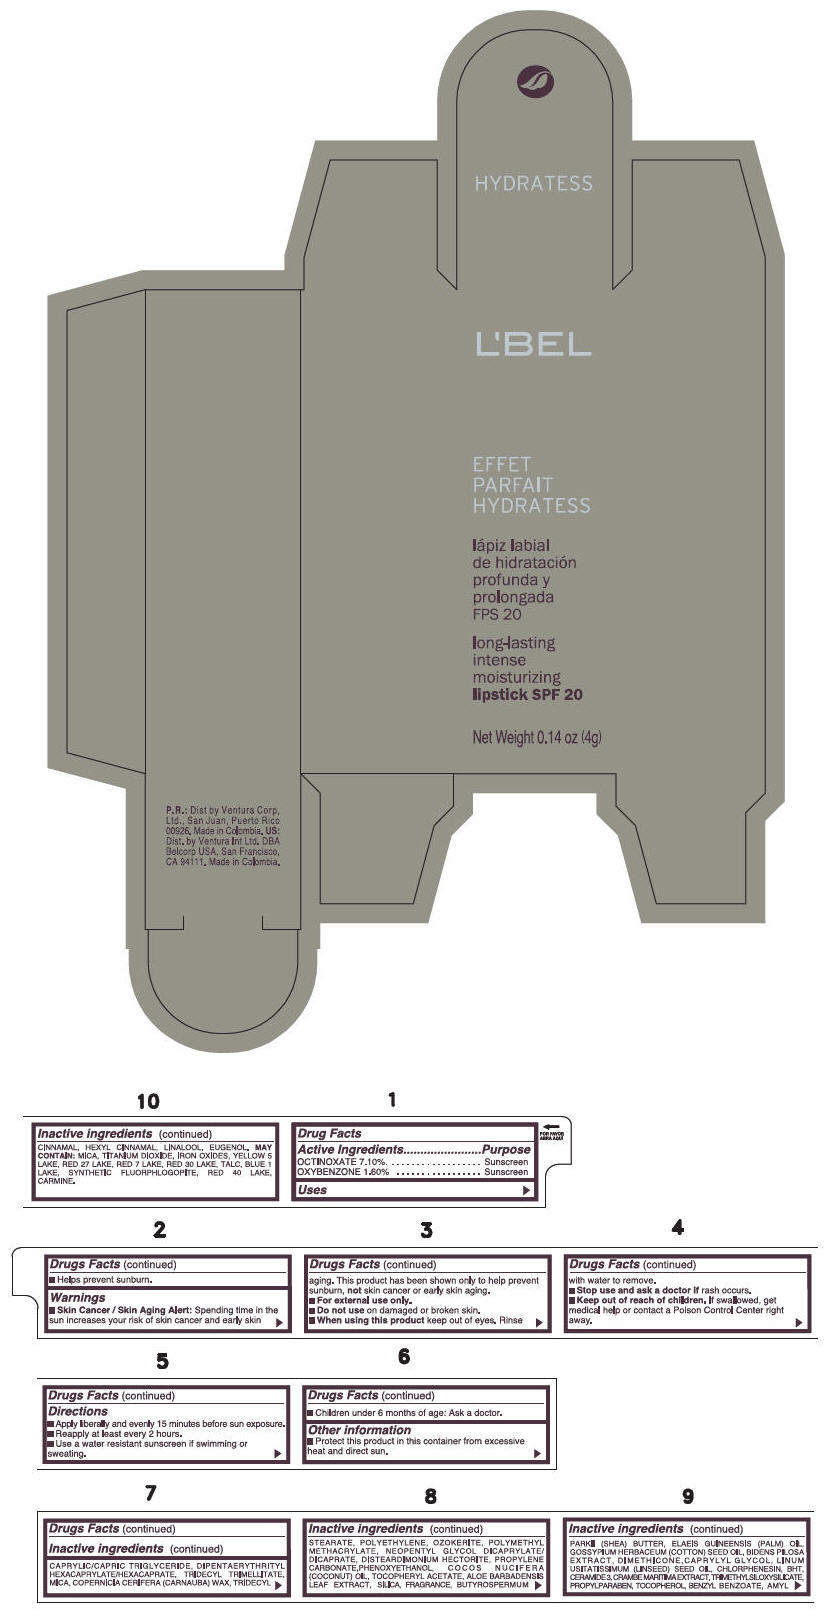 PRINCIPAL DISPLAY PANEL - 4 g Tube Box - (NUDE INTIME) - PURPLE